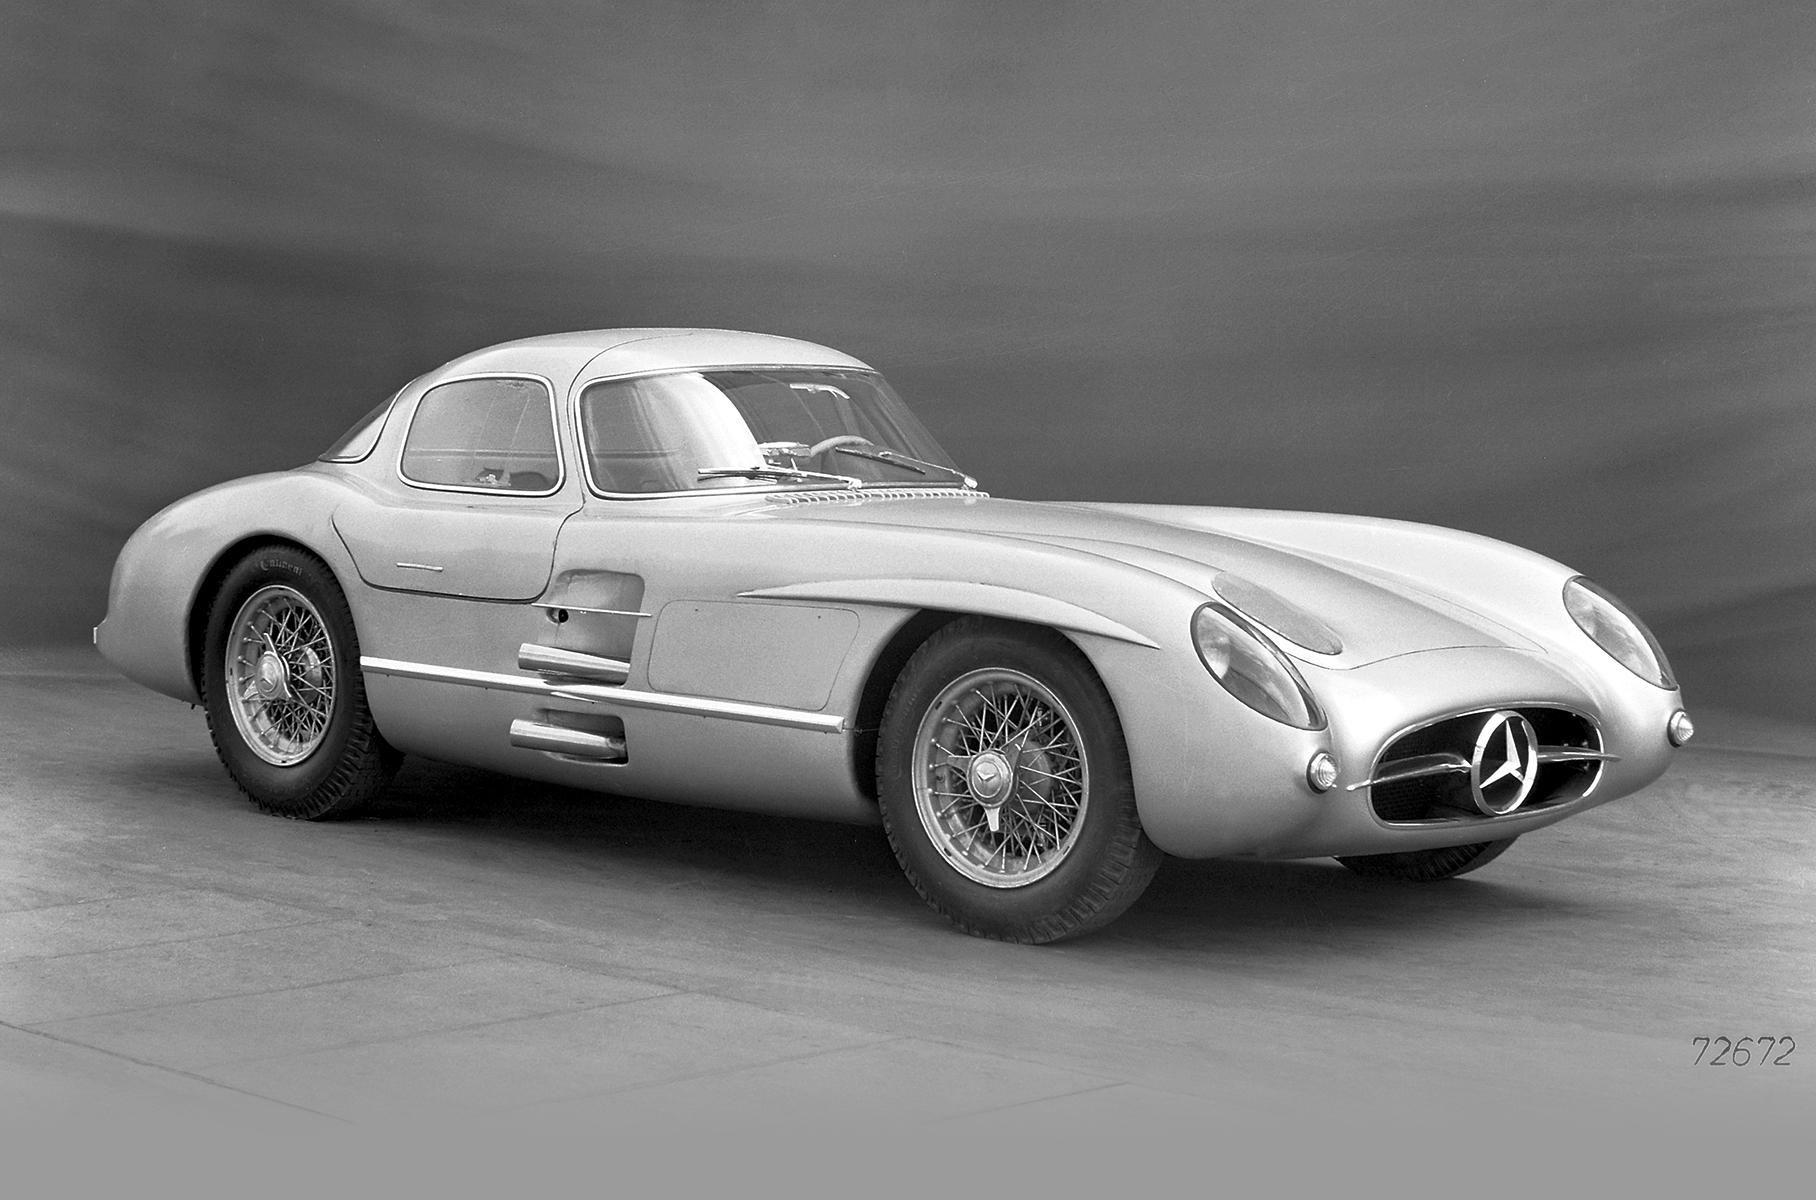 Mercedes-Benz продал самый дорогой автомобиль в мире